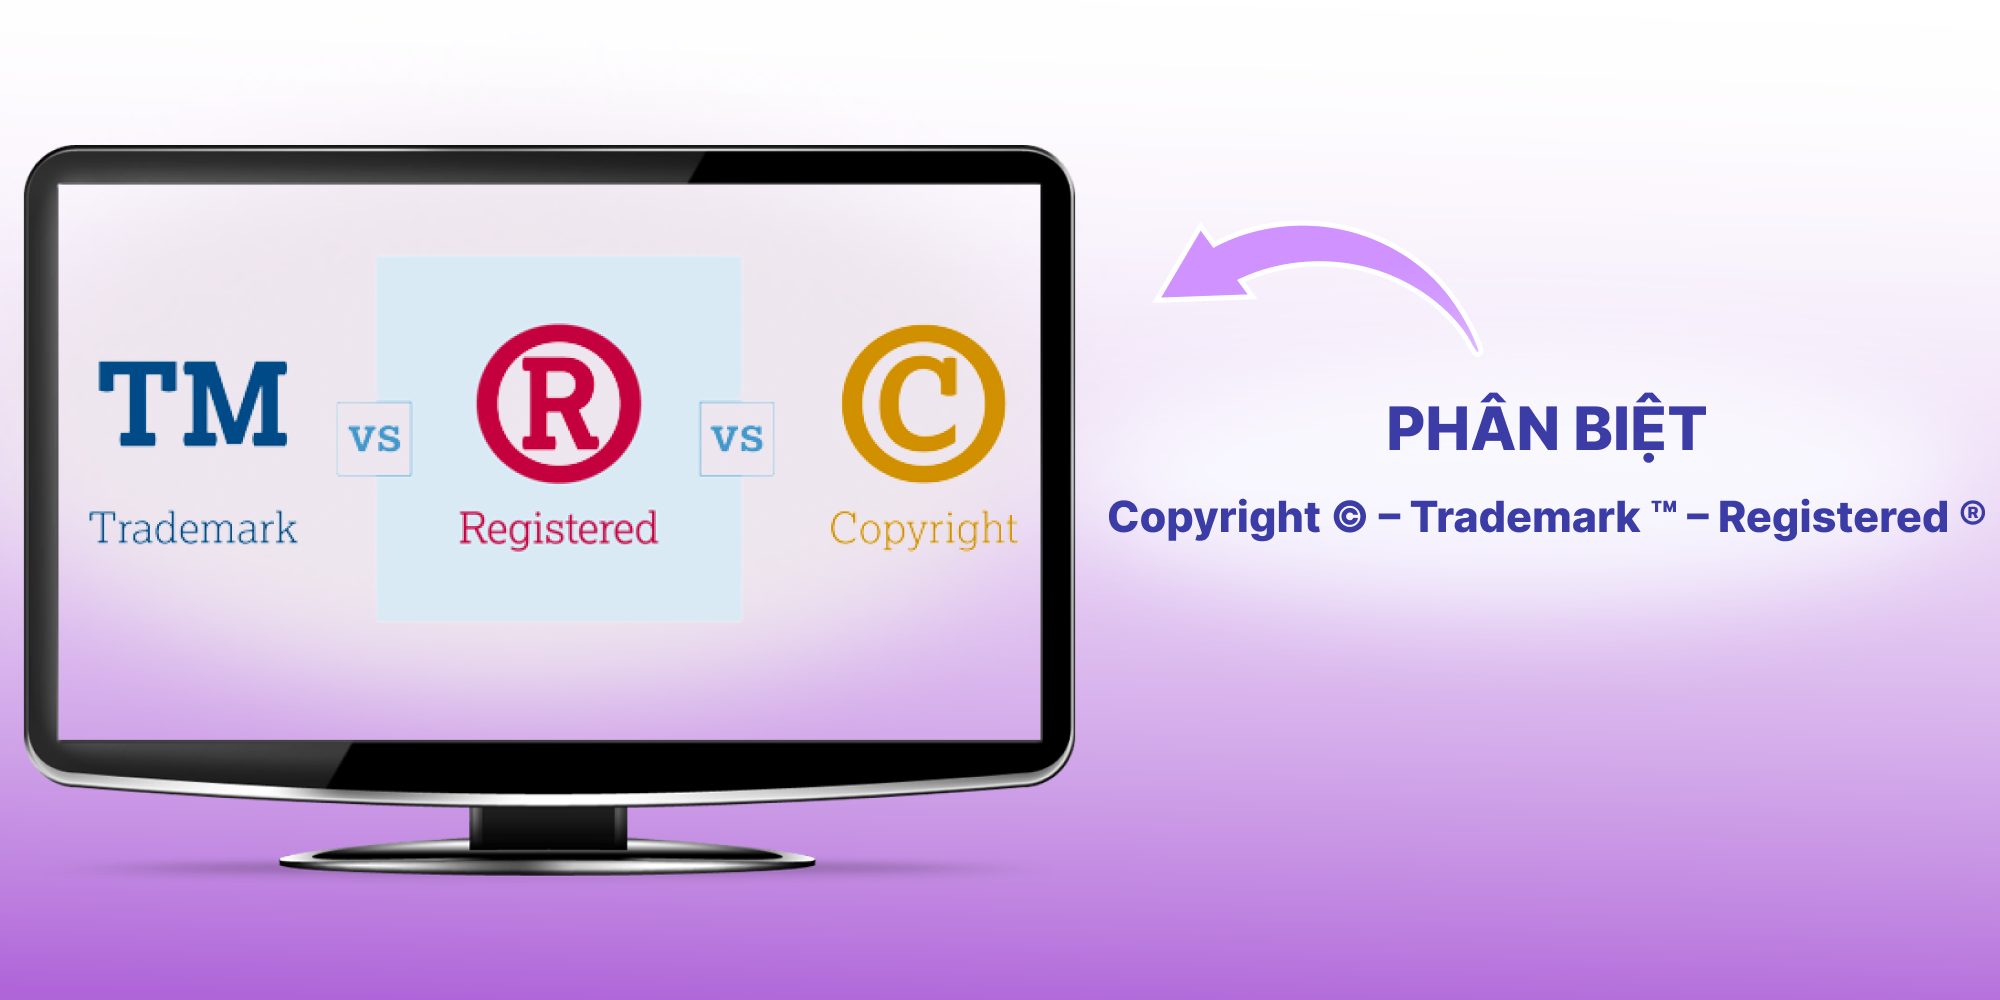 Phân biệt Copyright, Trademark và Registered